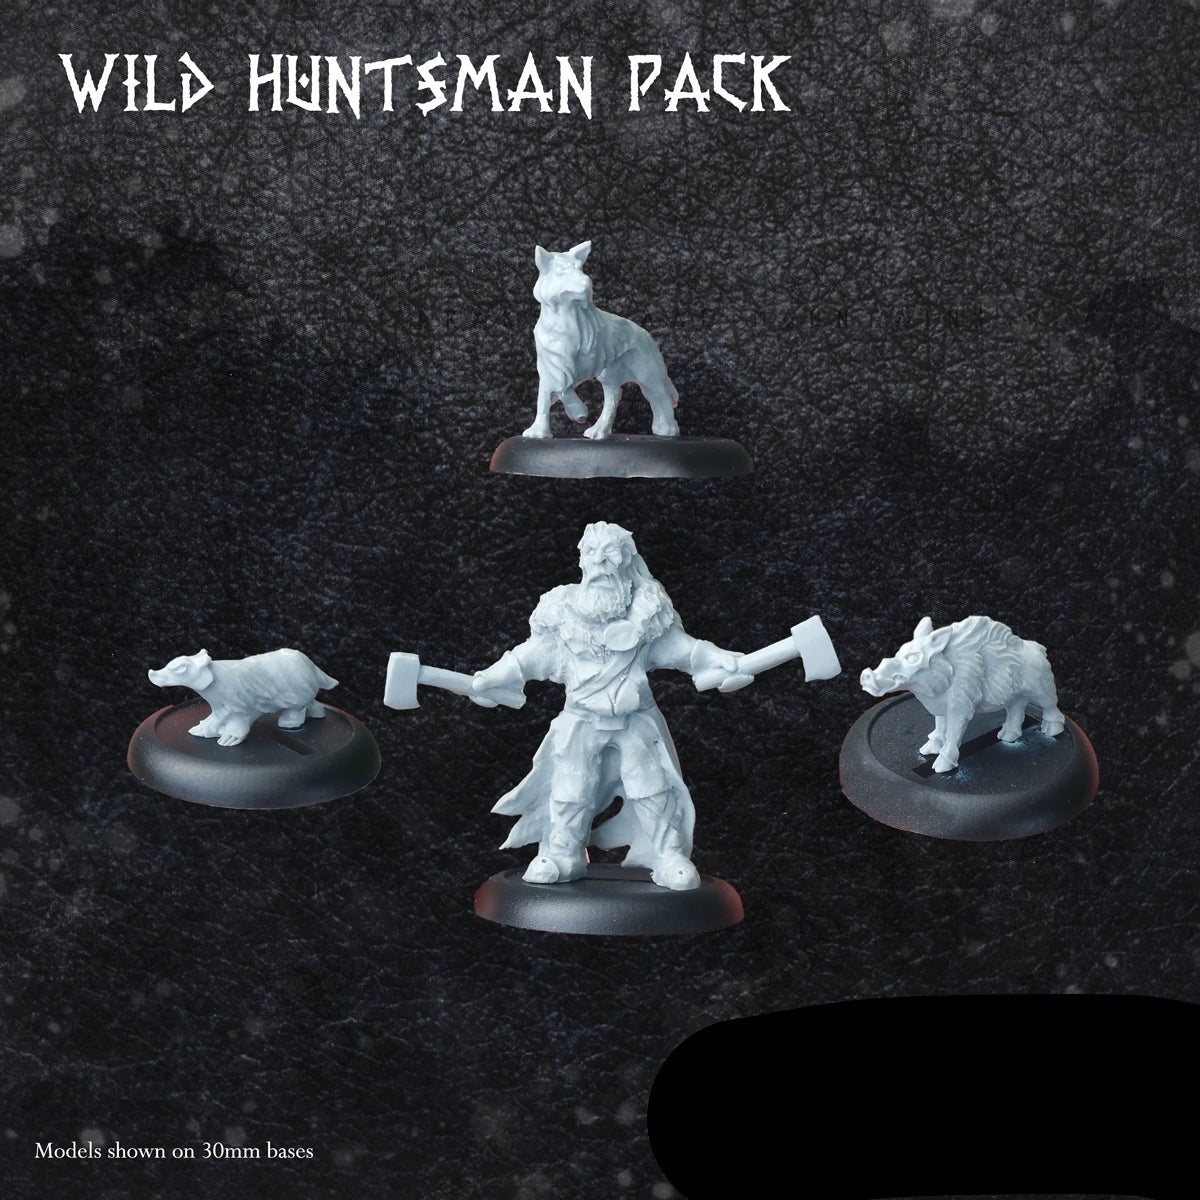 Wild Huntsman Pack